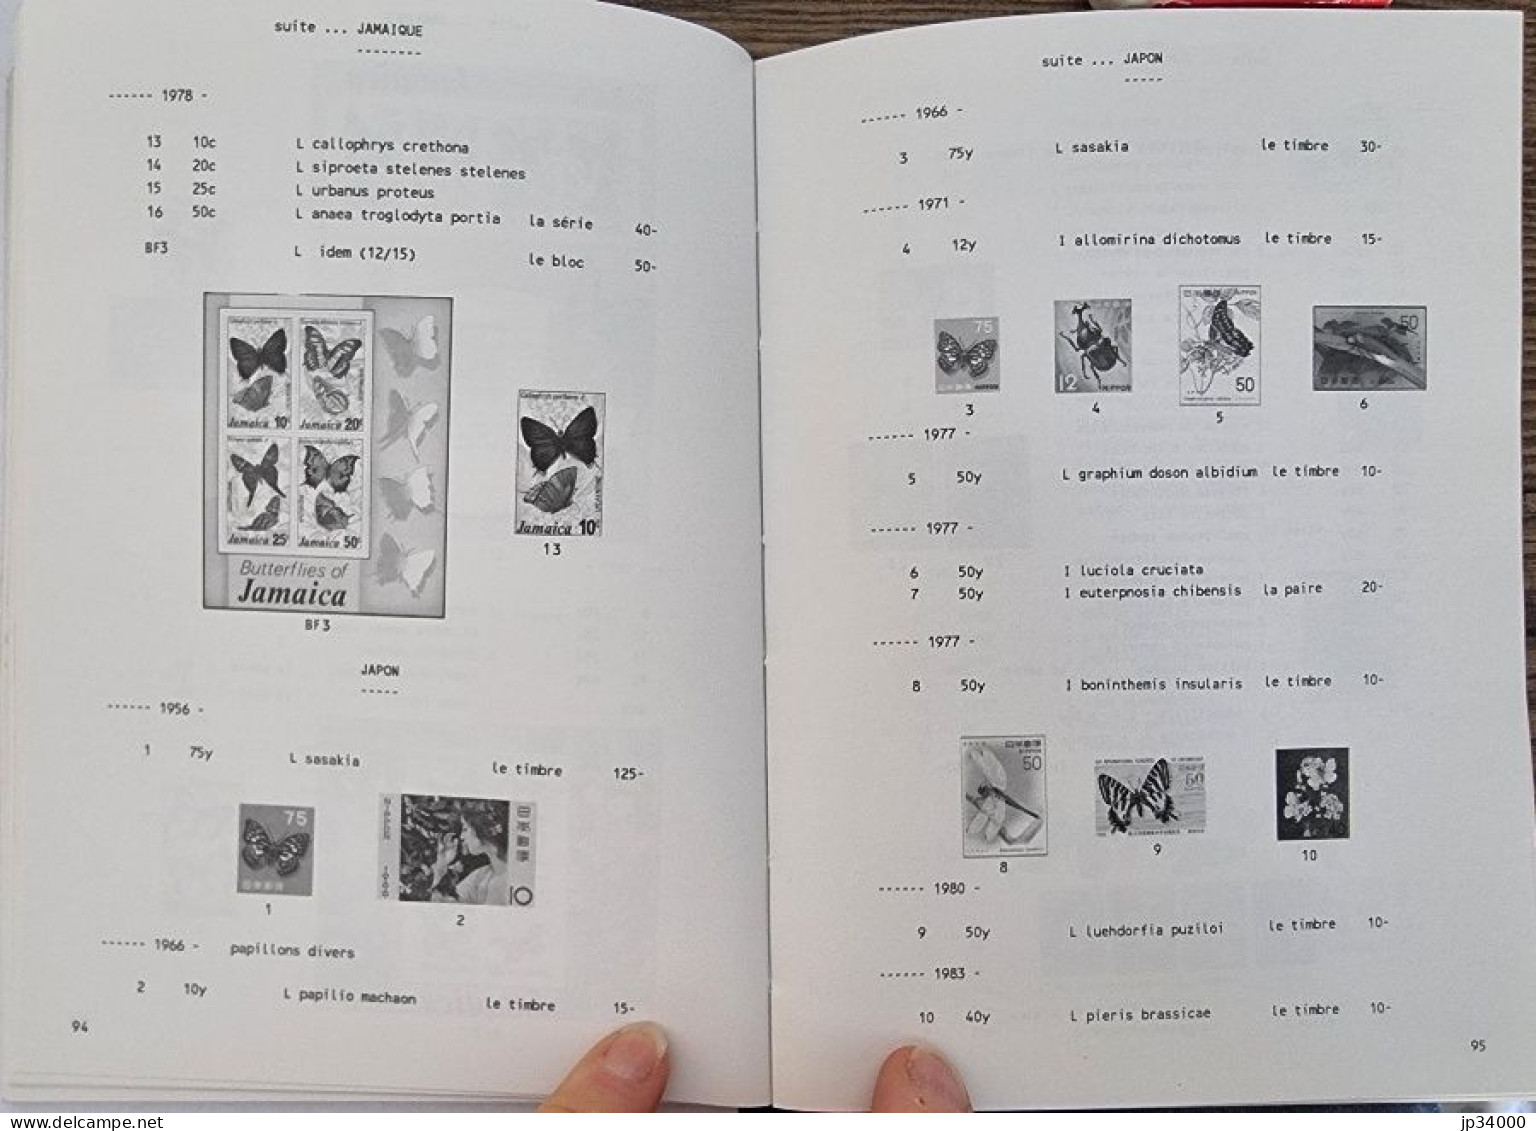 Catalogue A.P.I. De Timbres Poste "Insectes Et Arachnides" Du Monde Entier. 1989 - Motivkataloge